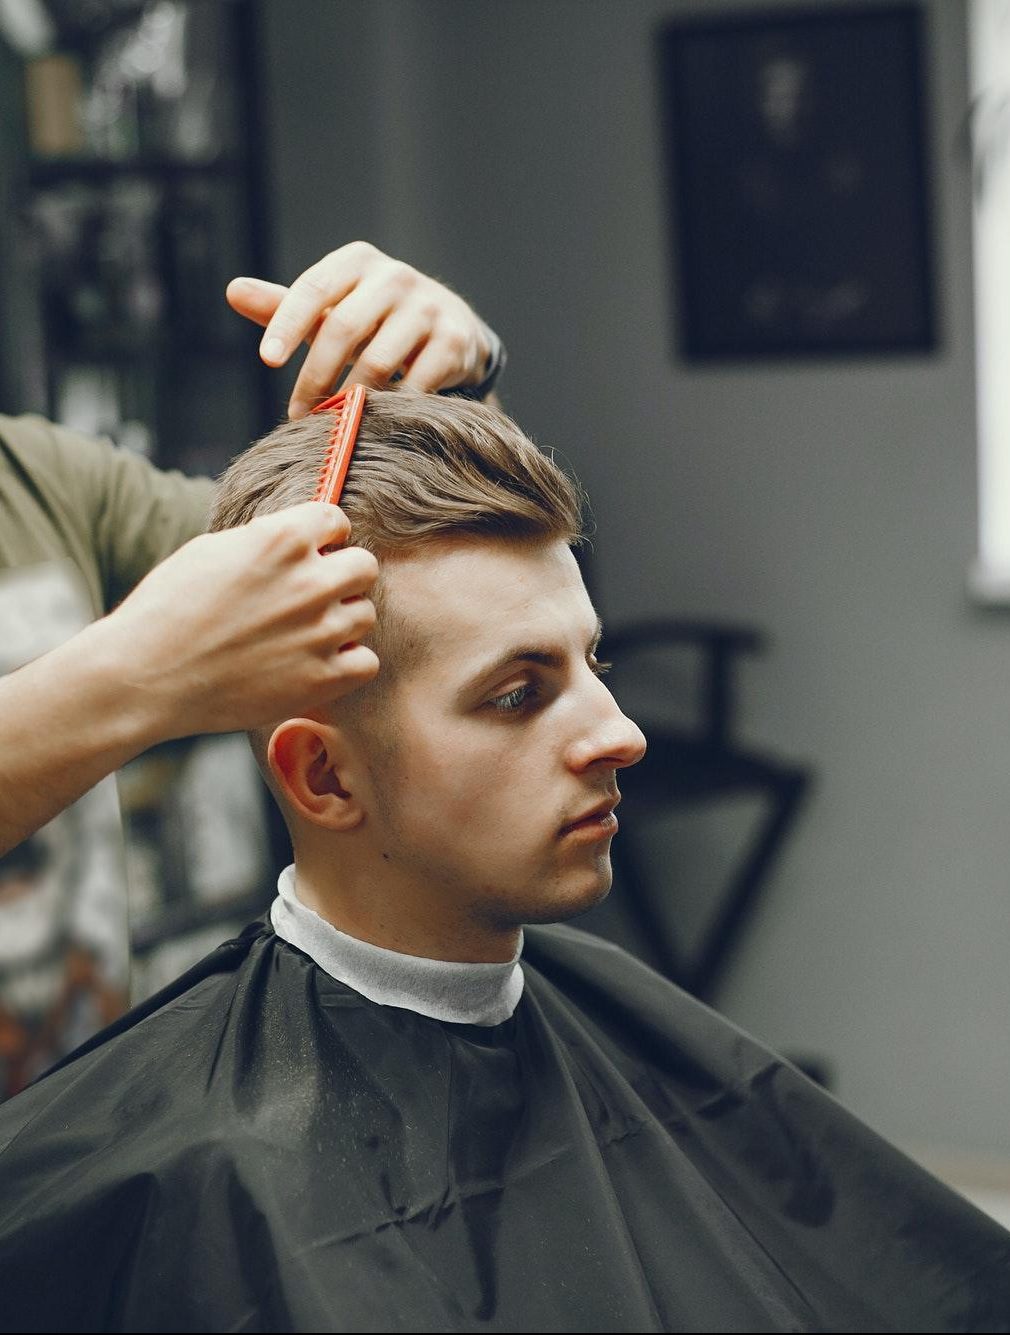 En man blir klippt av en frisör i Halmstad